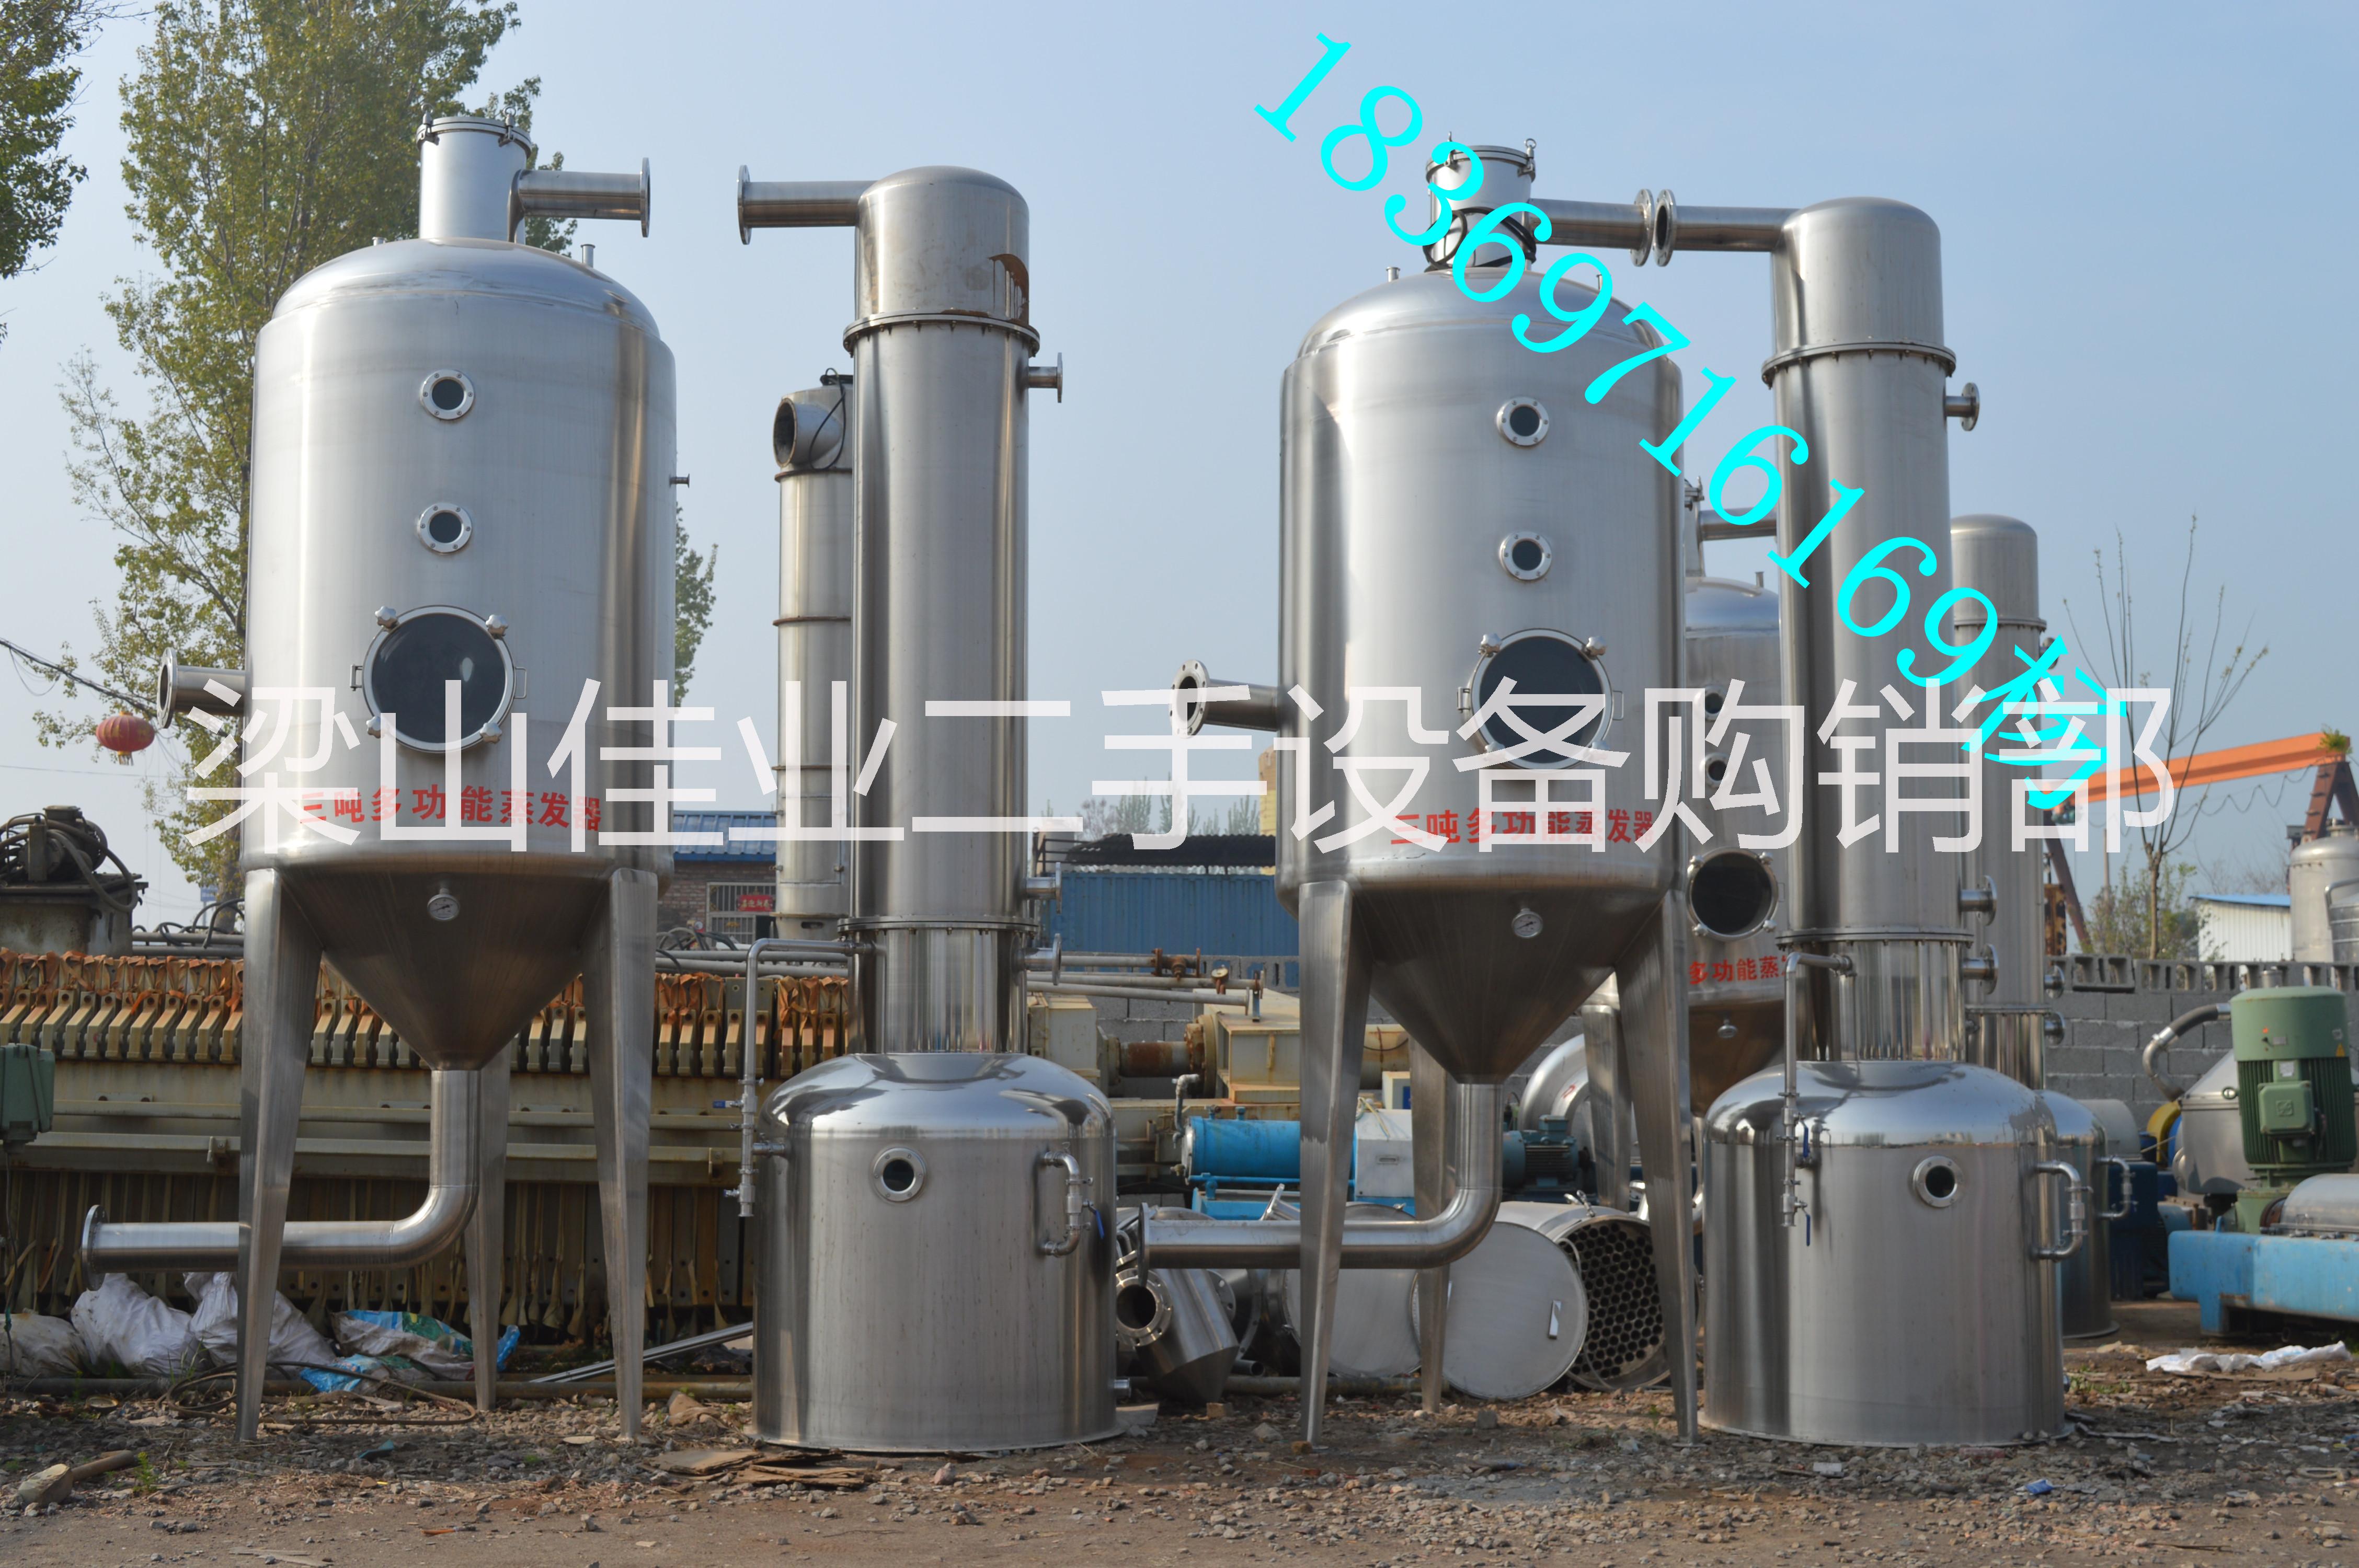 山东蒸发器设备厂家出售不锈钢多效蒸发器 结晶罐 蒸馏塔 提取罐等18369716169图片